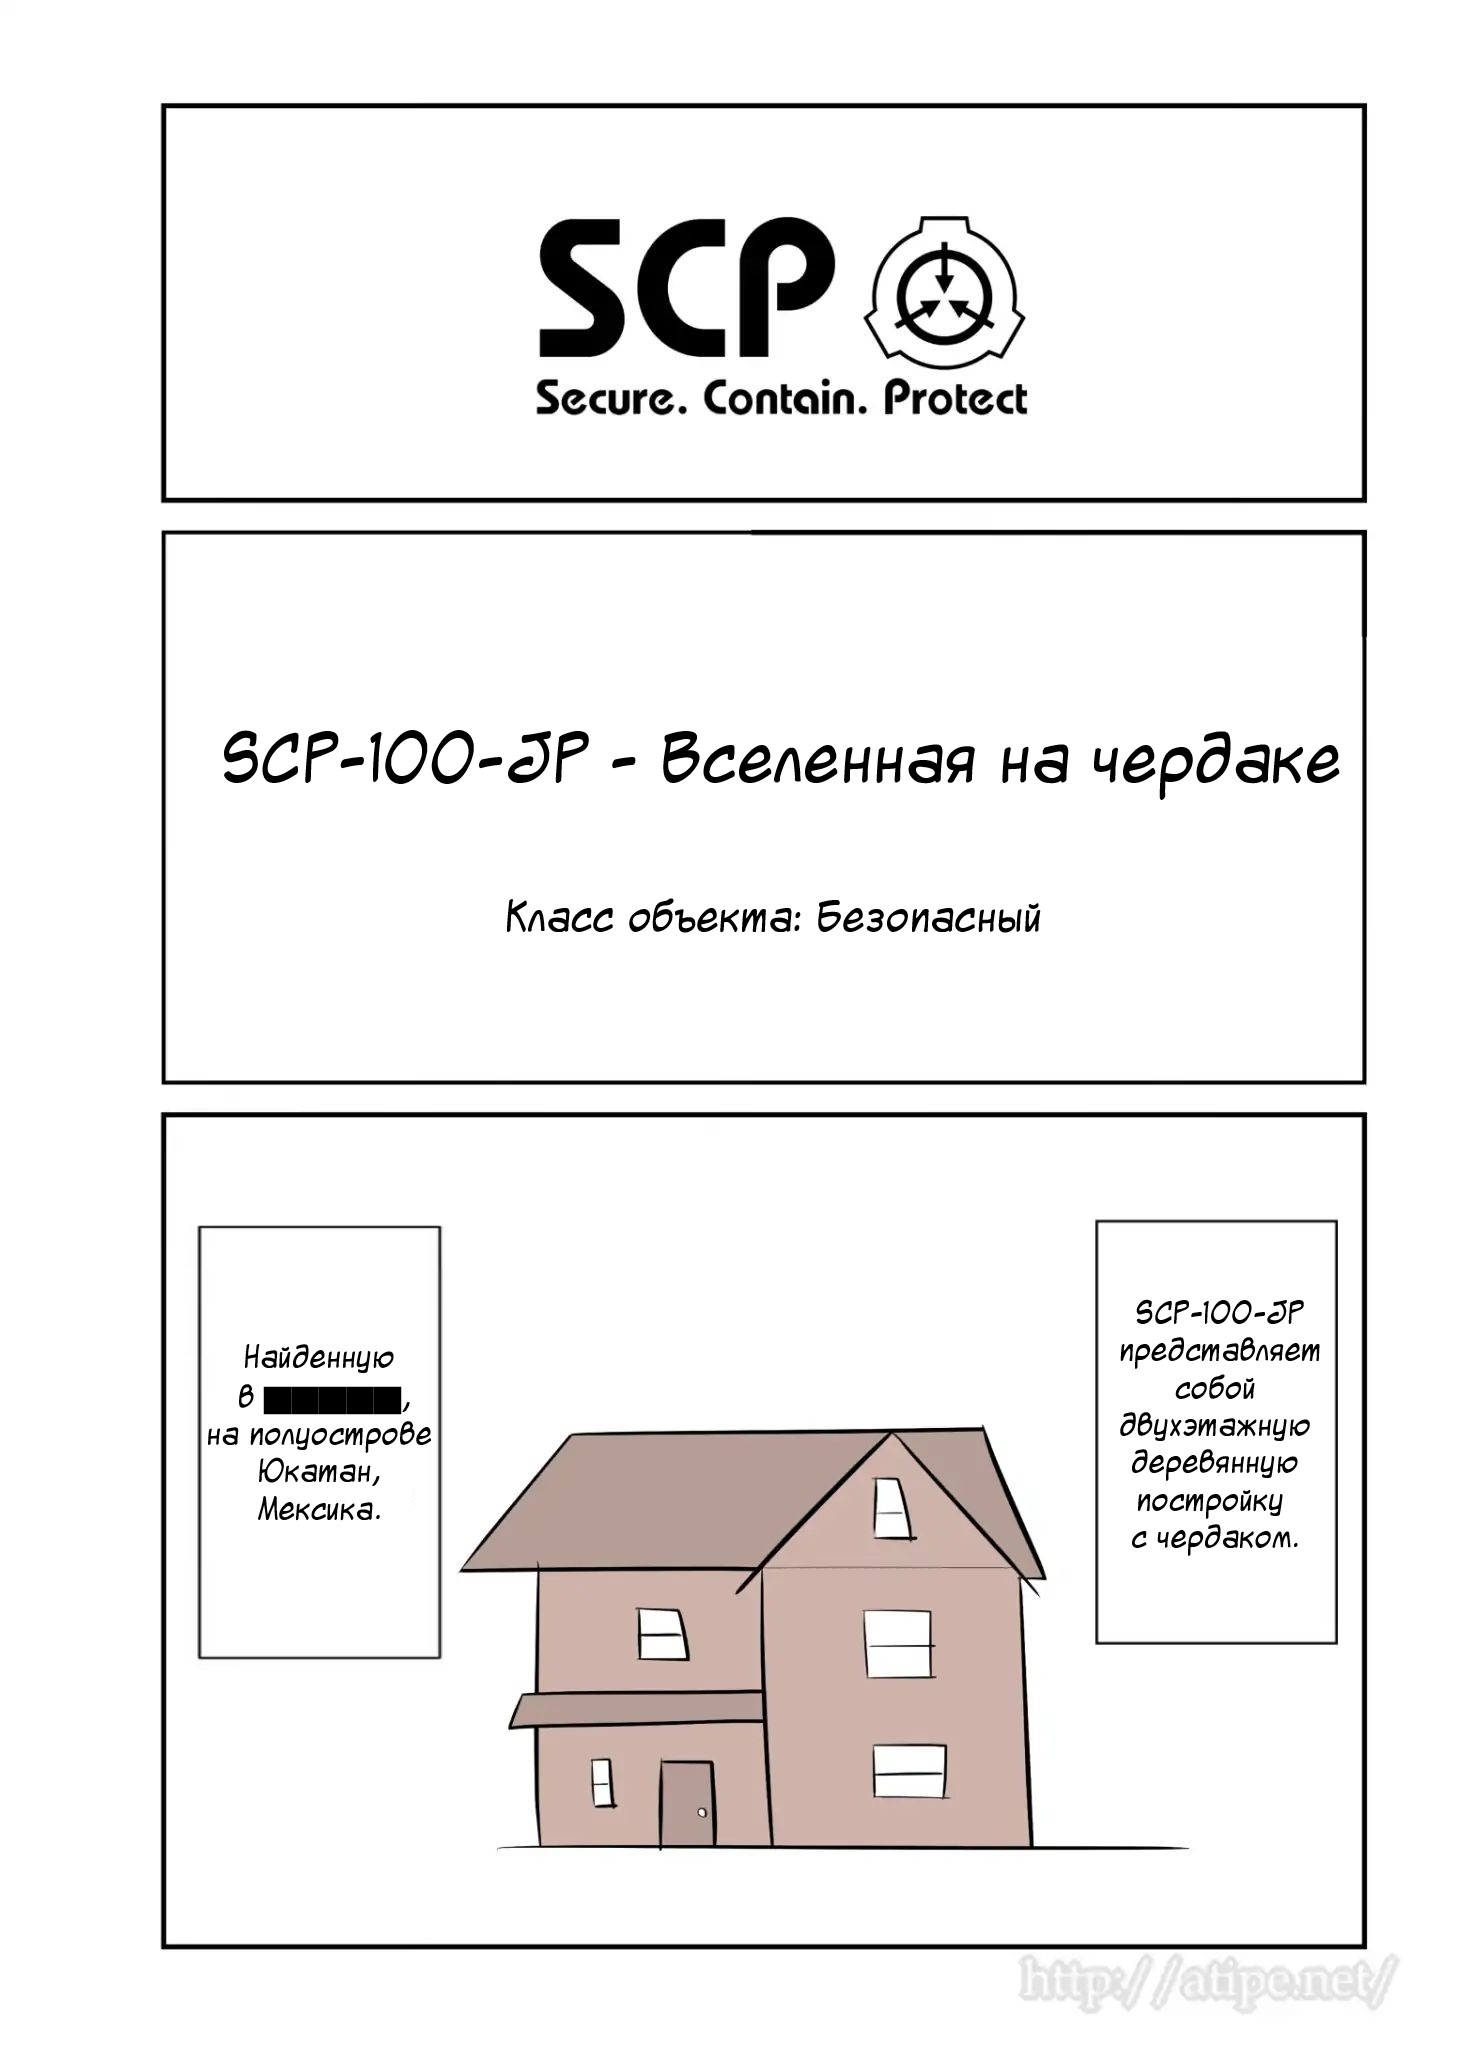 Упрощенный SCP 1 - 50 SCP-100-JP